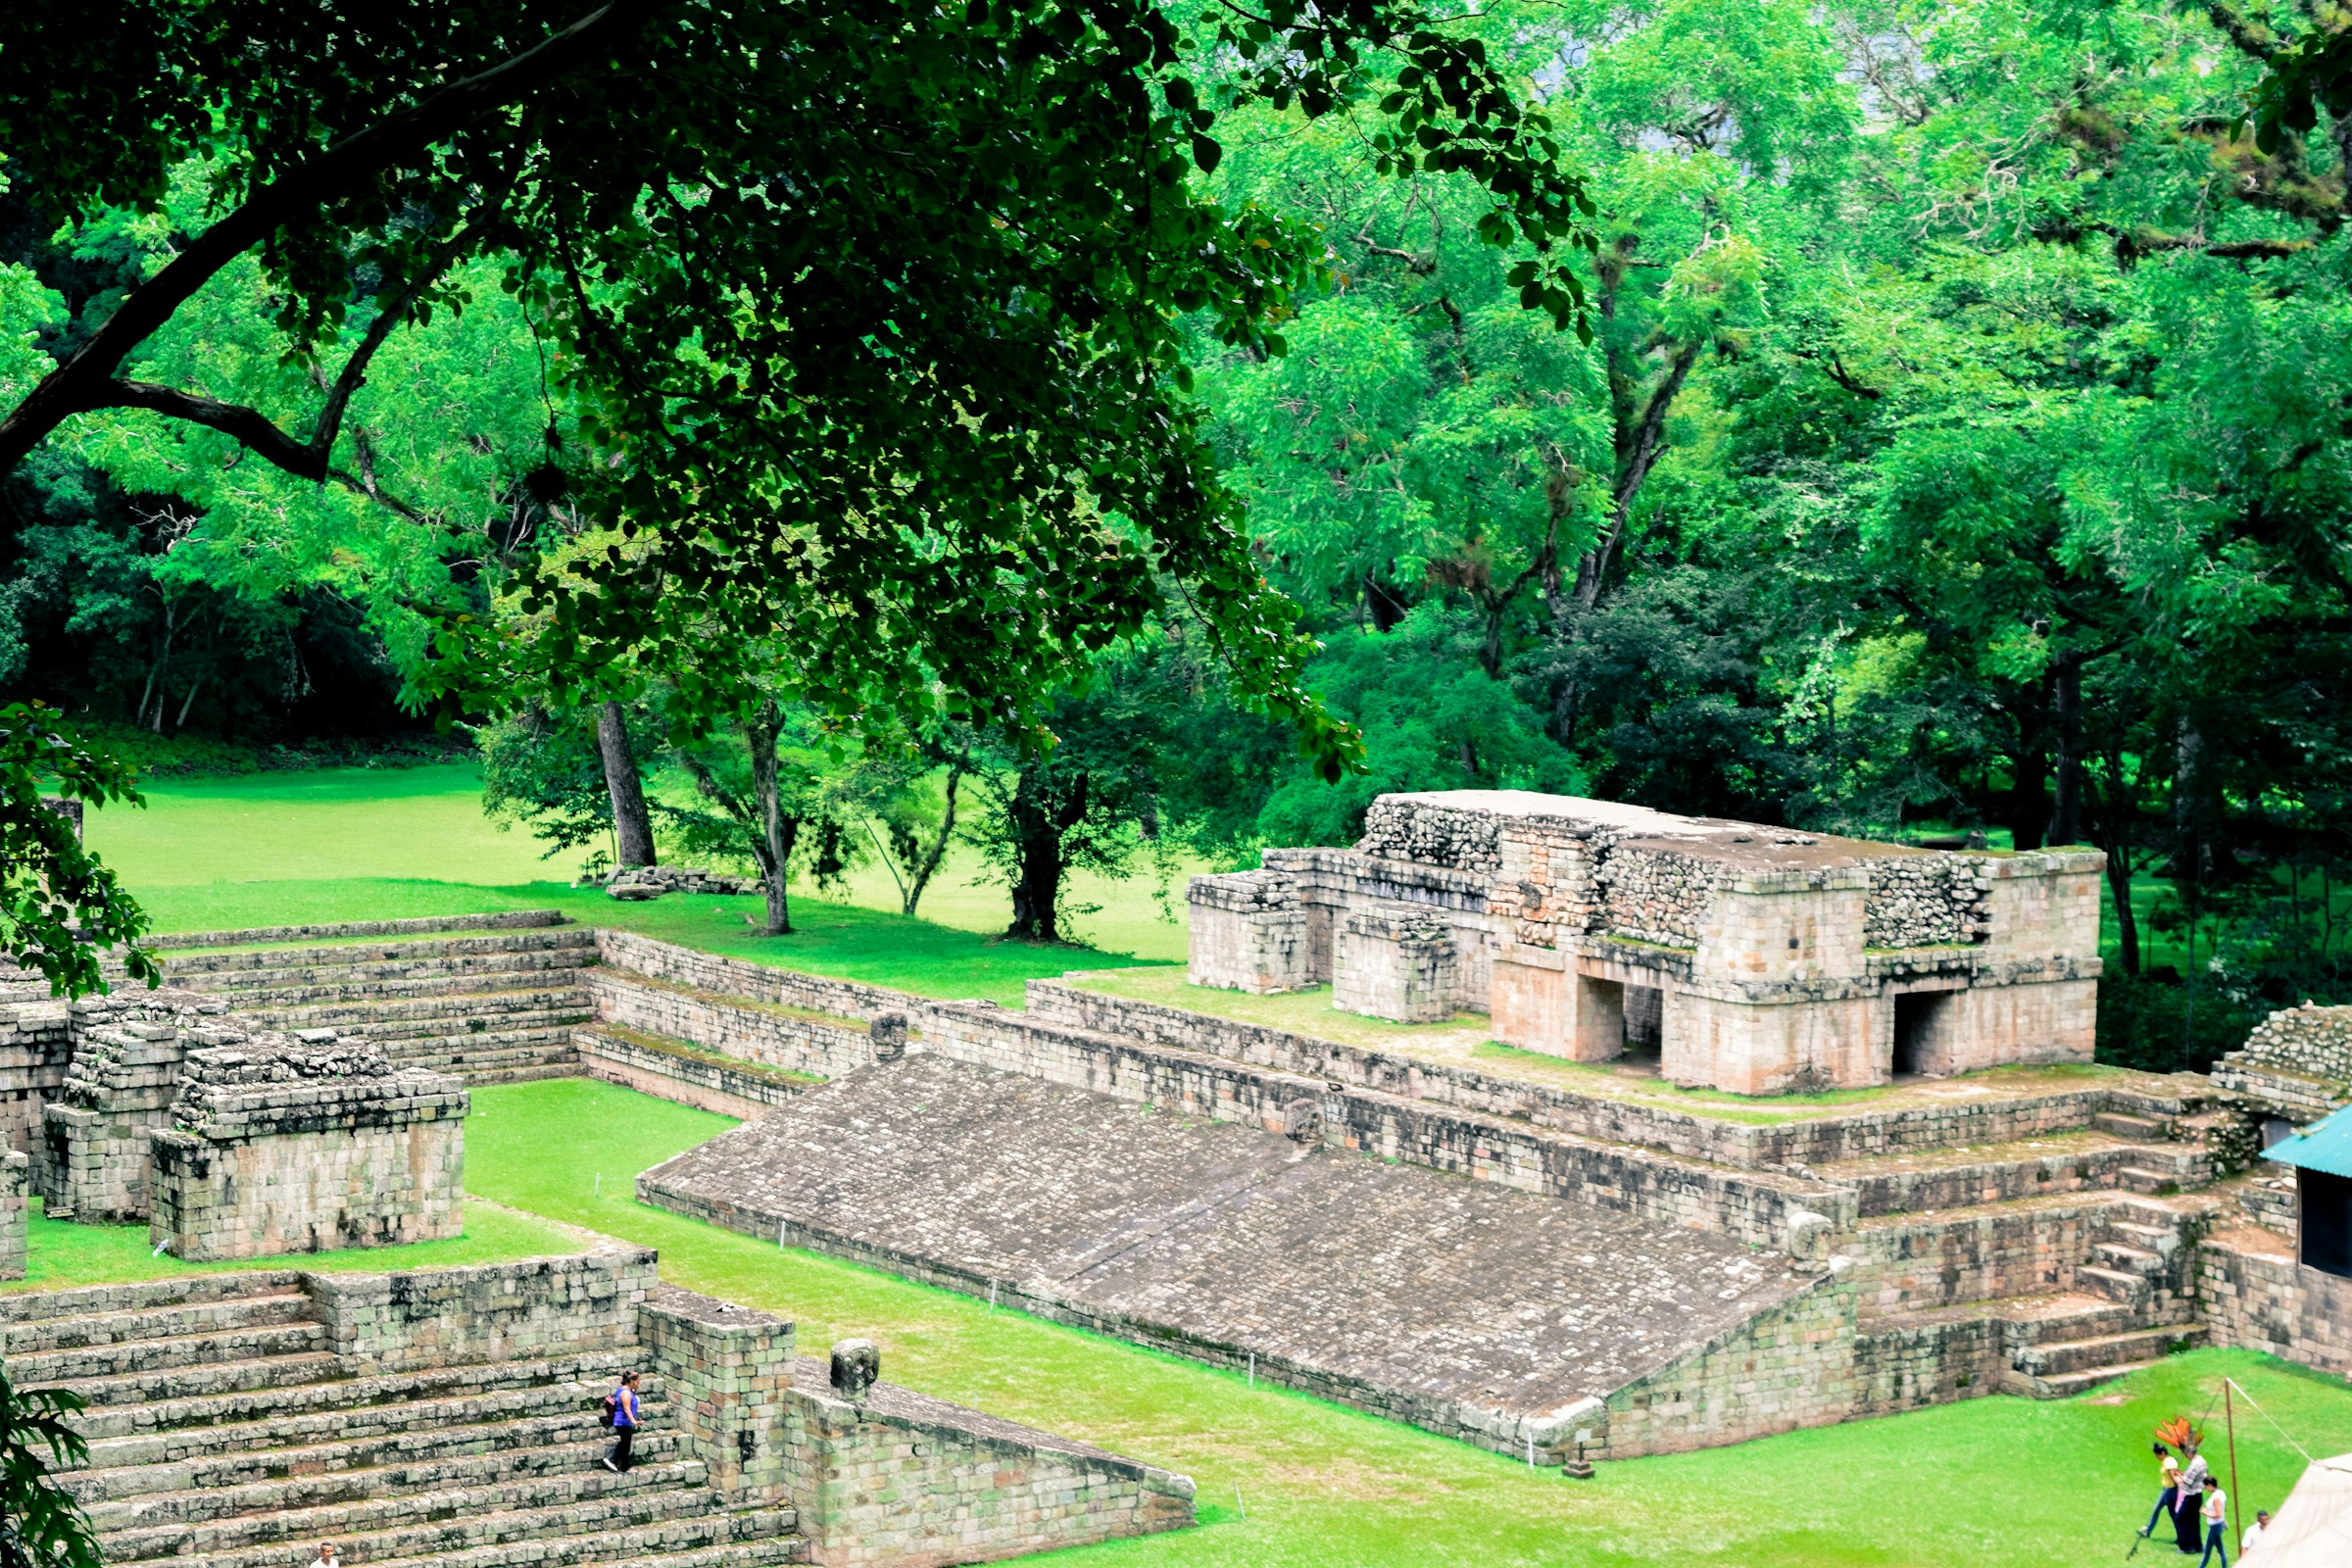 Cancha de pelota en Copan Honduras Patrimonio de la Humanidad de la UNESCO en 1980